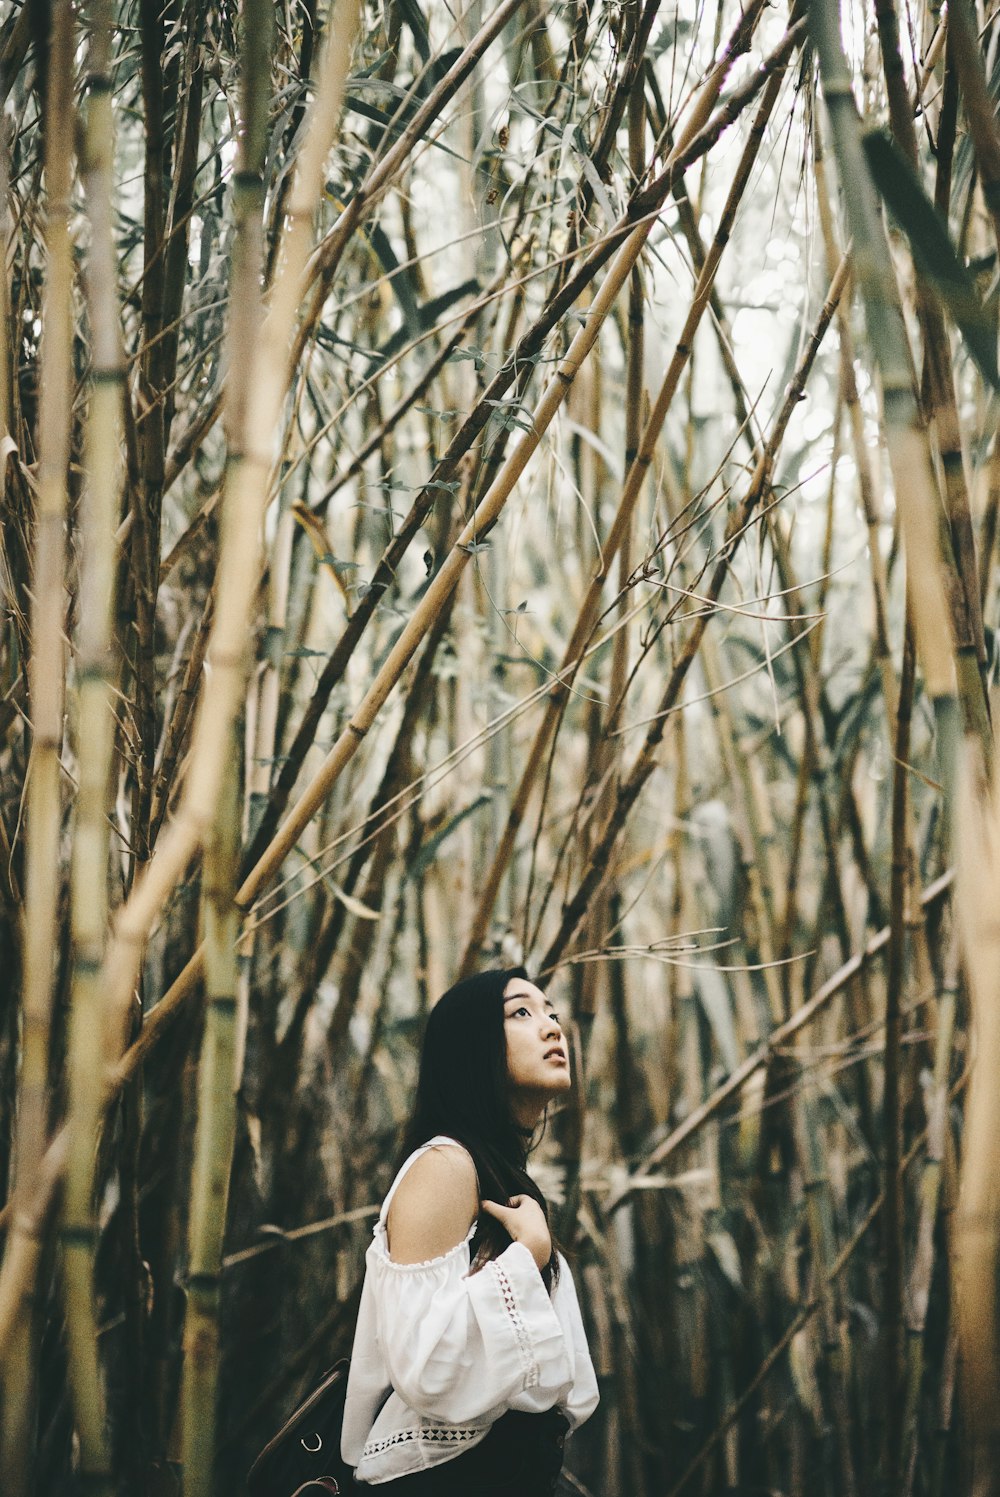 대나무 숲 안에 서 있는 흰색 차가운 어깨 상의를 입은 여자